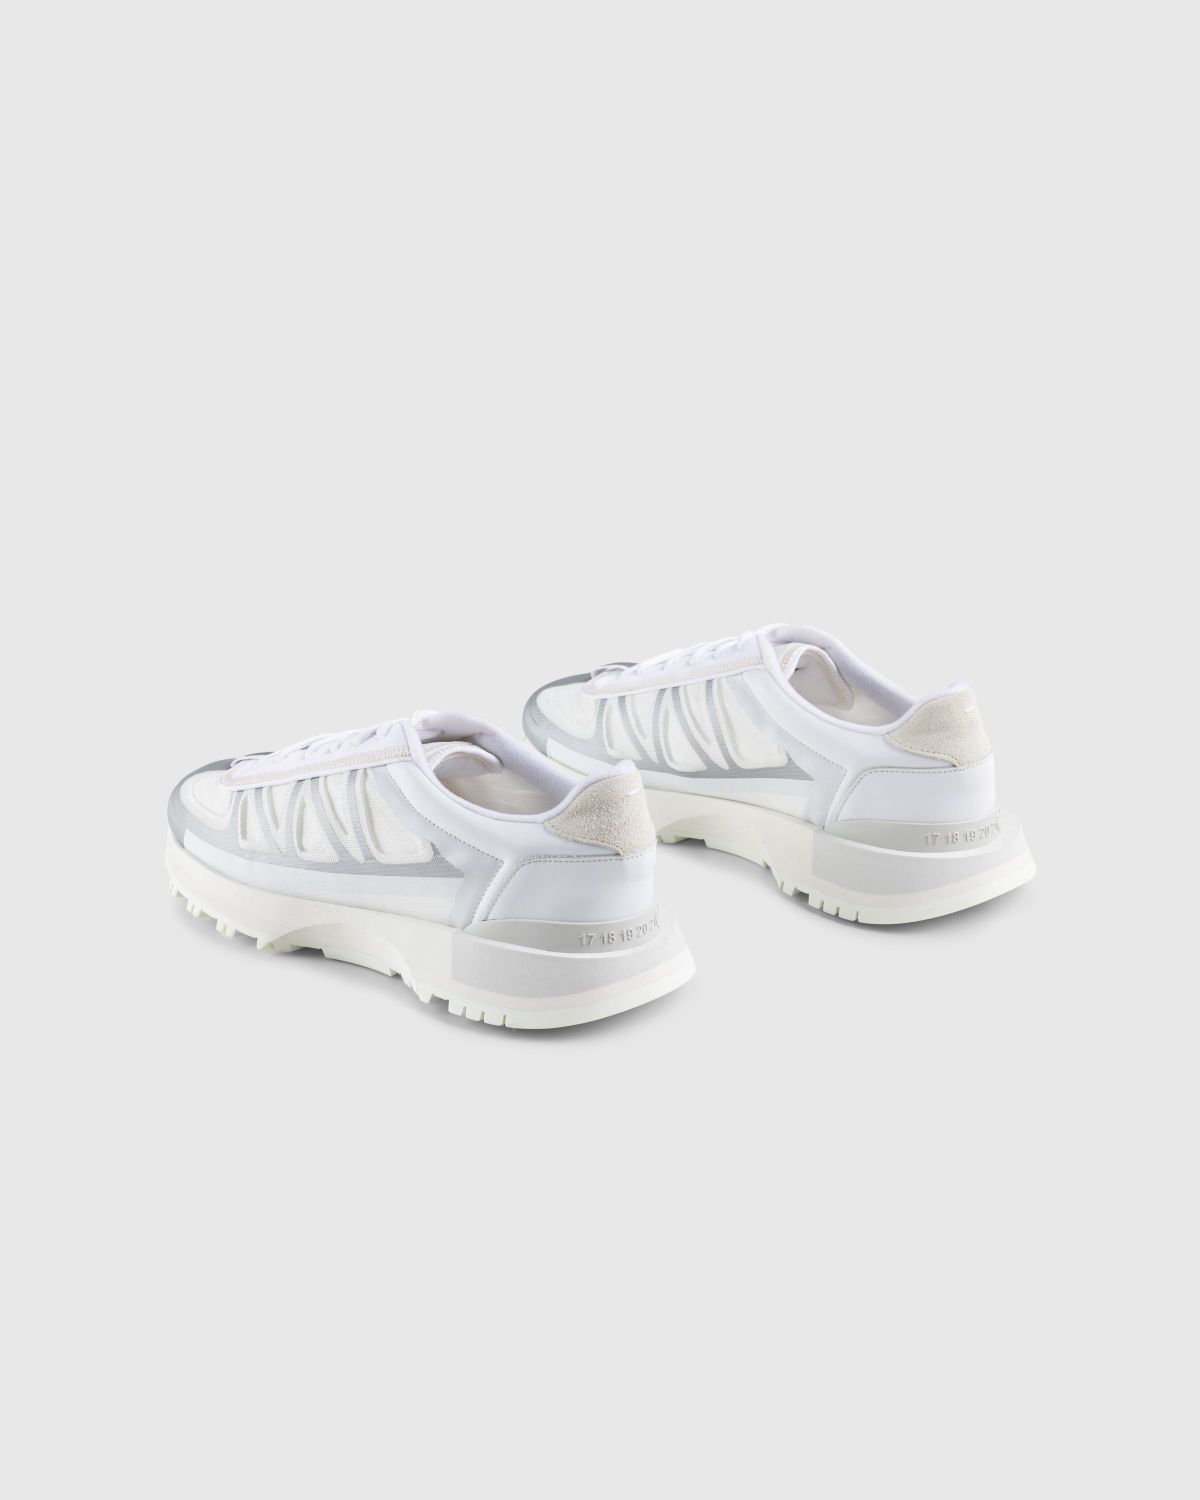 Maison Margiela – 50/50 Sneakers White - Sneakers - White - Image 4